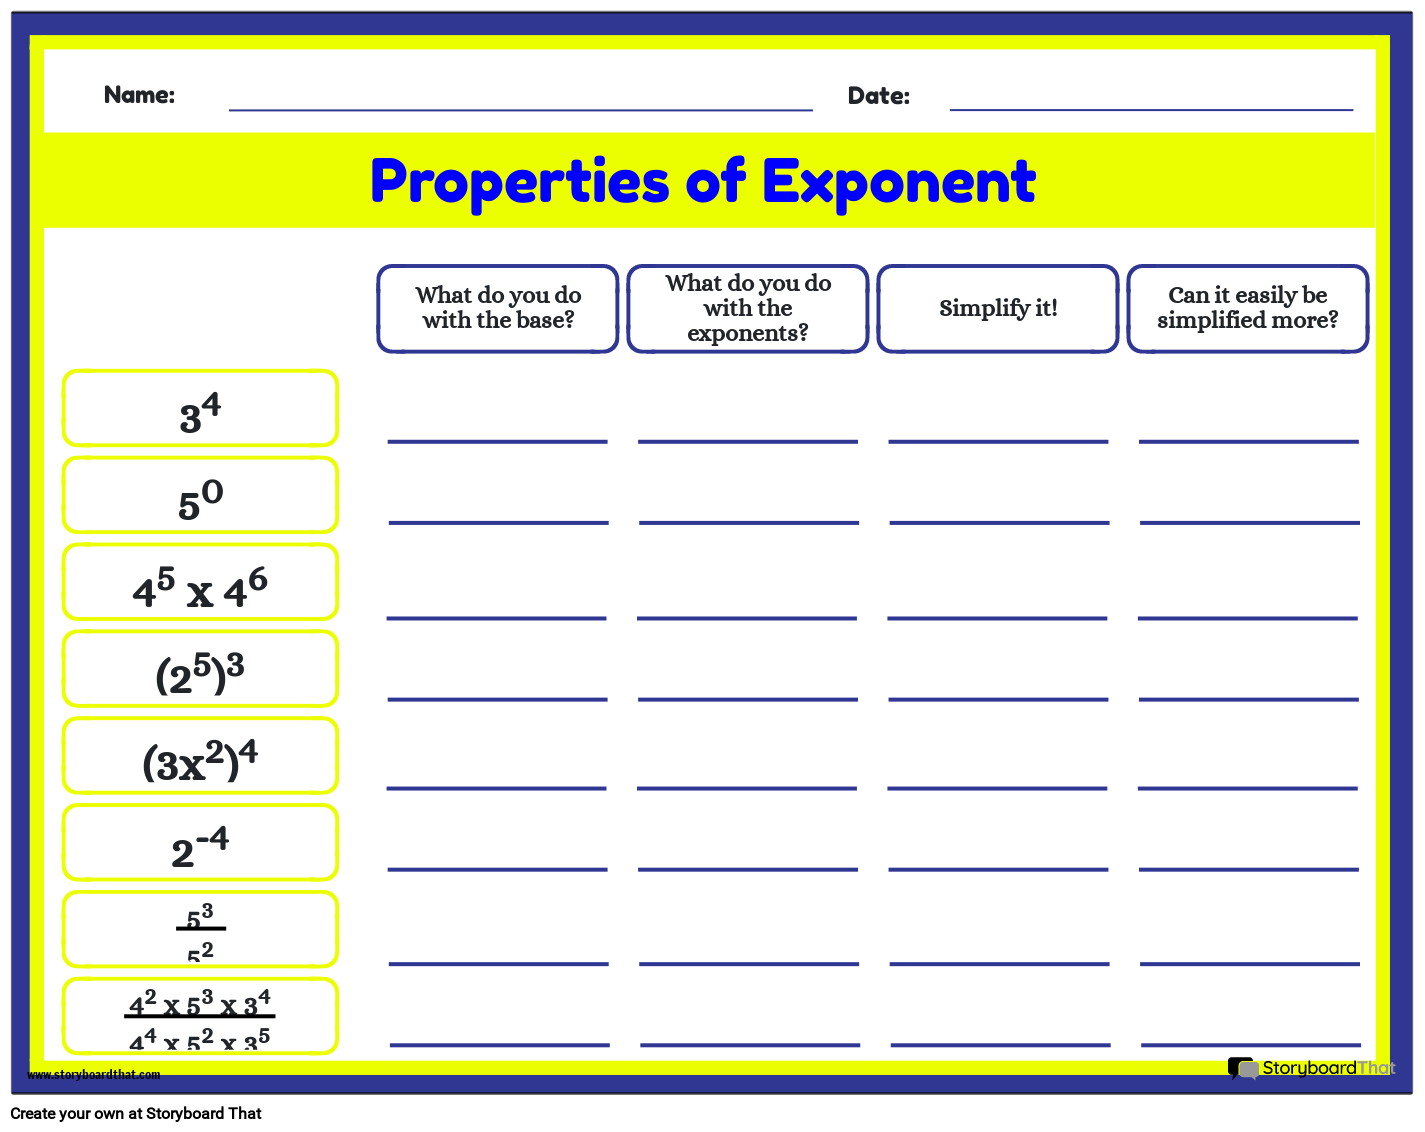 Properties of Exponent Practice Worksheet